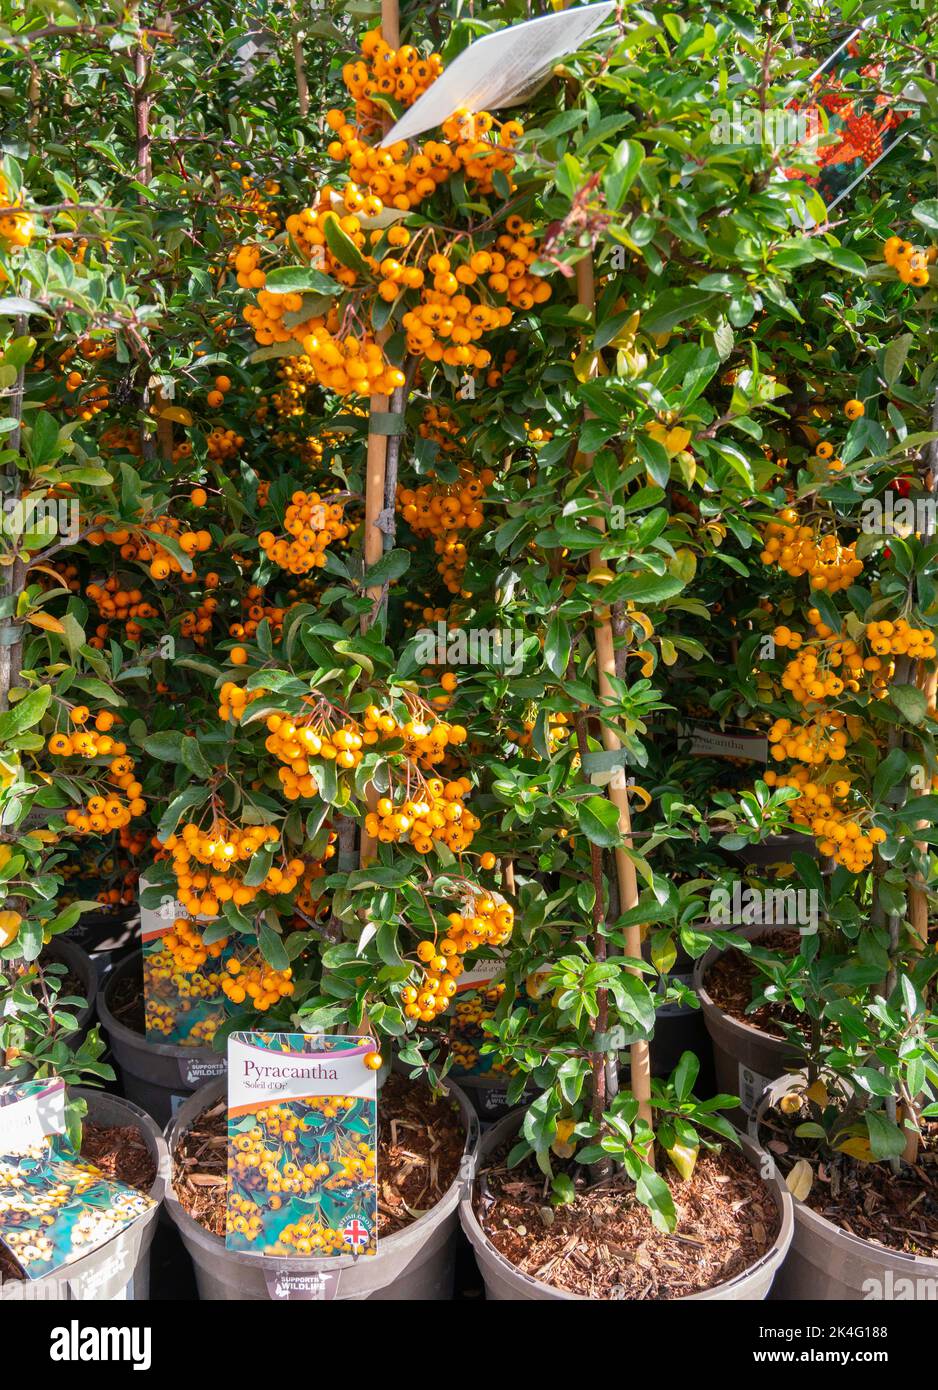 Pyracantha un arbuste grimpant avec beaucoup de baies d'orange vif à vendre dans un centre de jardin Banque D'Images